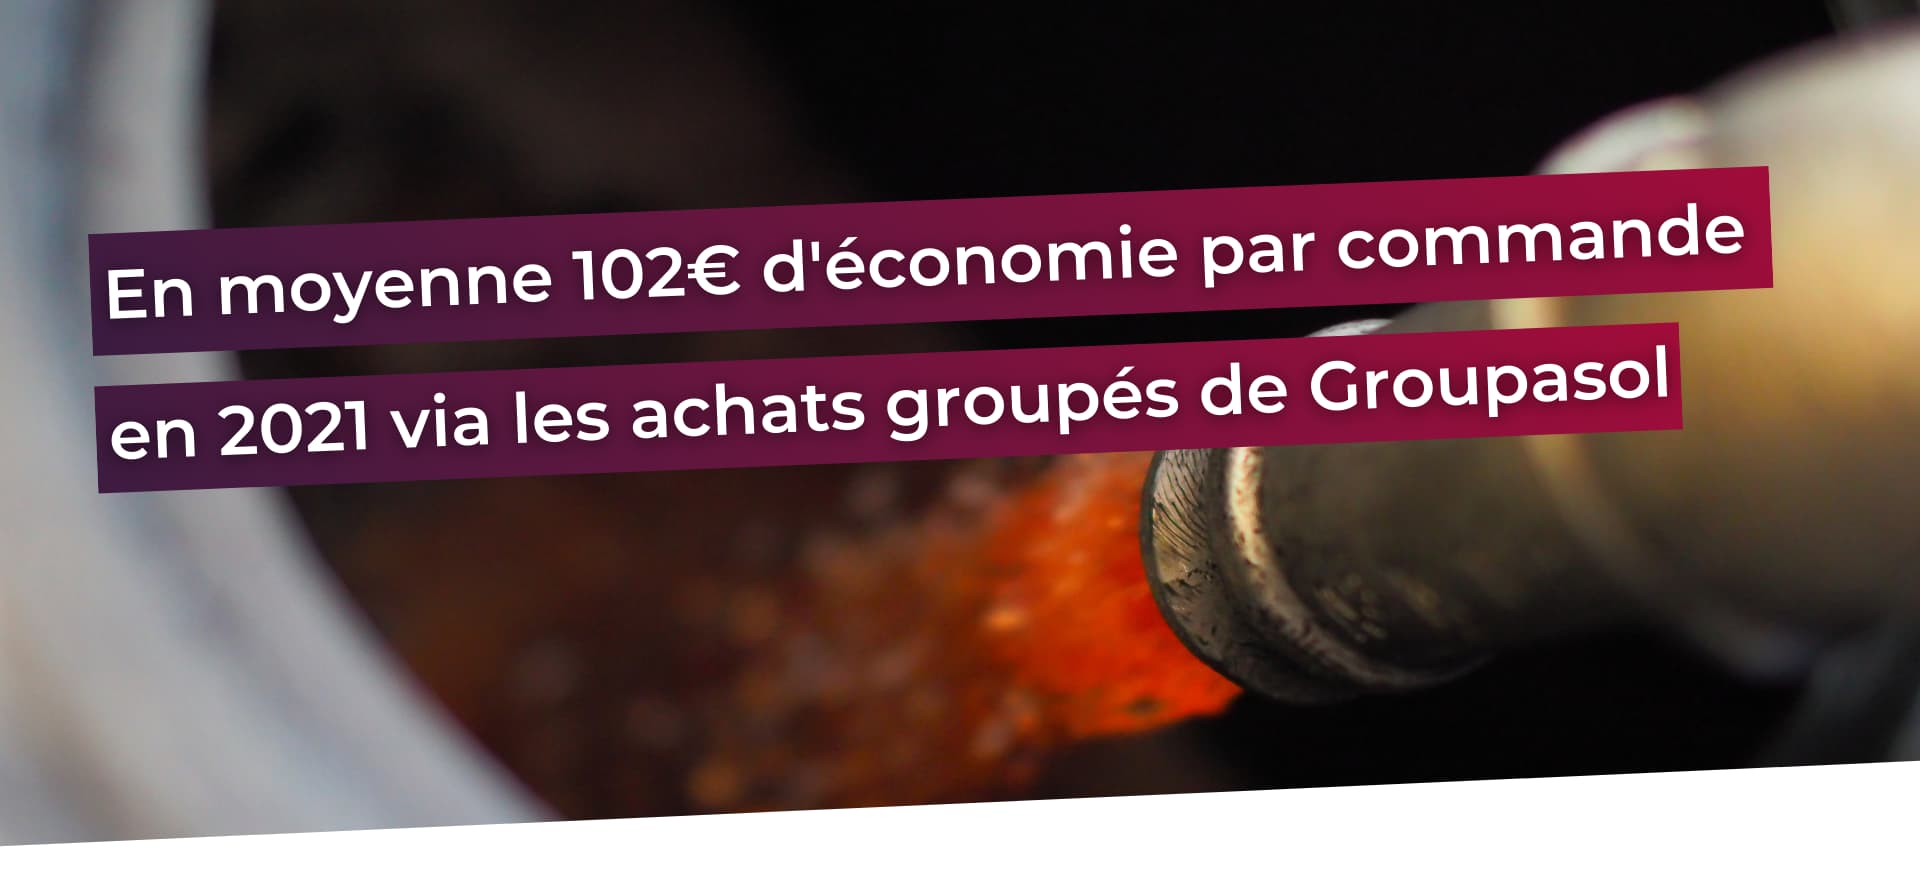 En moyenne 102 € d'économie en 2021 via les achats groupés de Groupasol